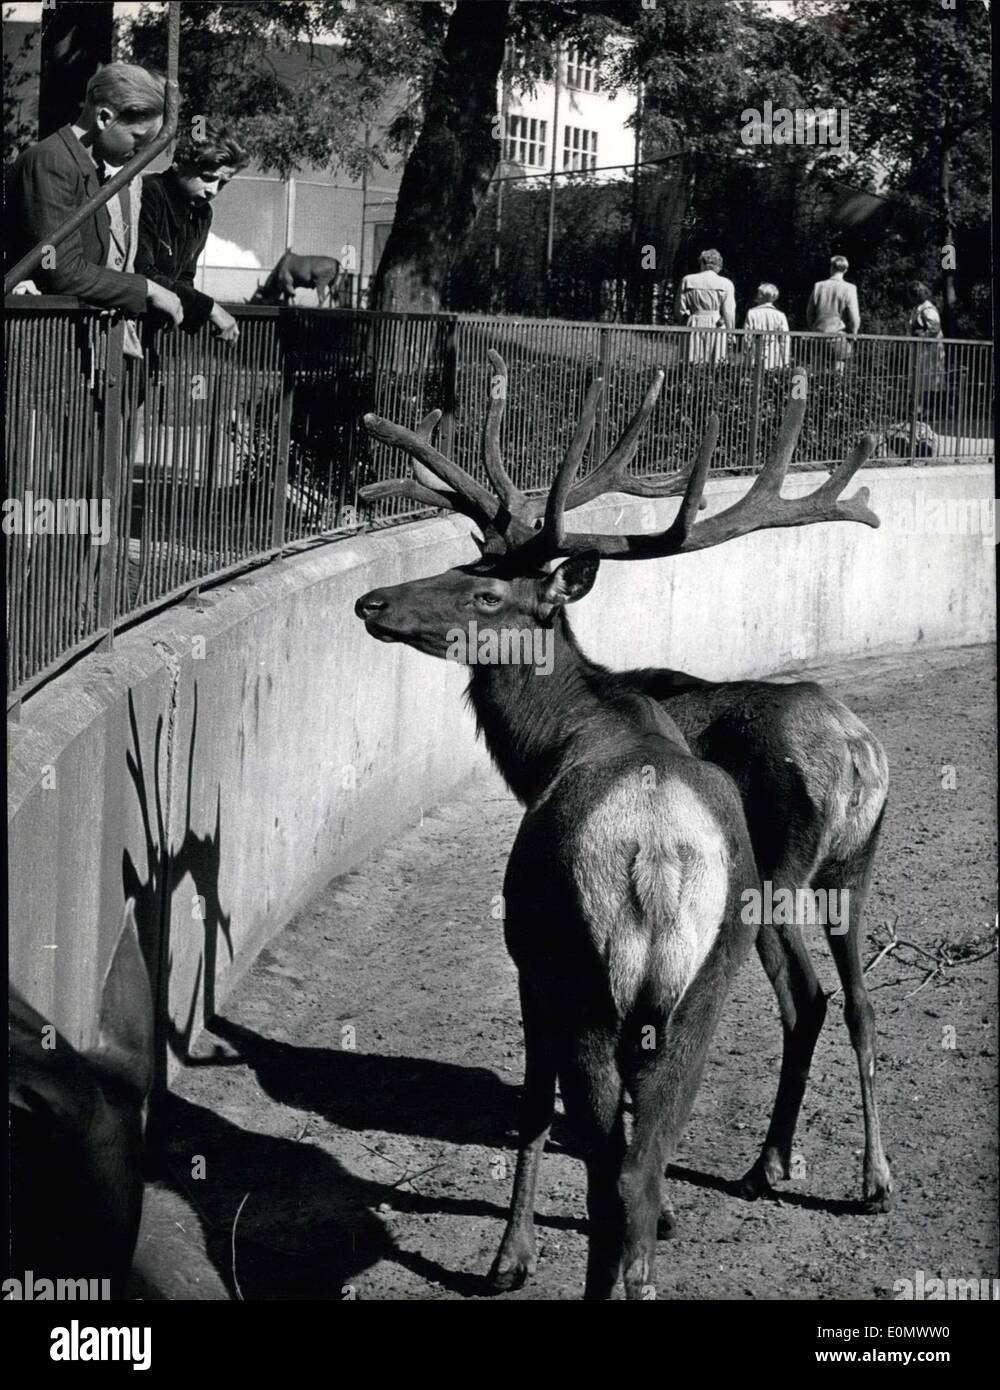 10. Juli 1956 - was ist das? Bild zeigt eine Bühne mit zwei Schwänzen in Franfurt Zoo Burgen gefunden? (Schauen Sie sich den Schatten und finden Sie zwei Hirsche) Stockfoto